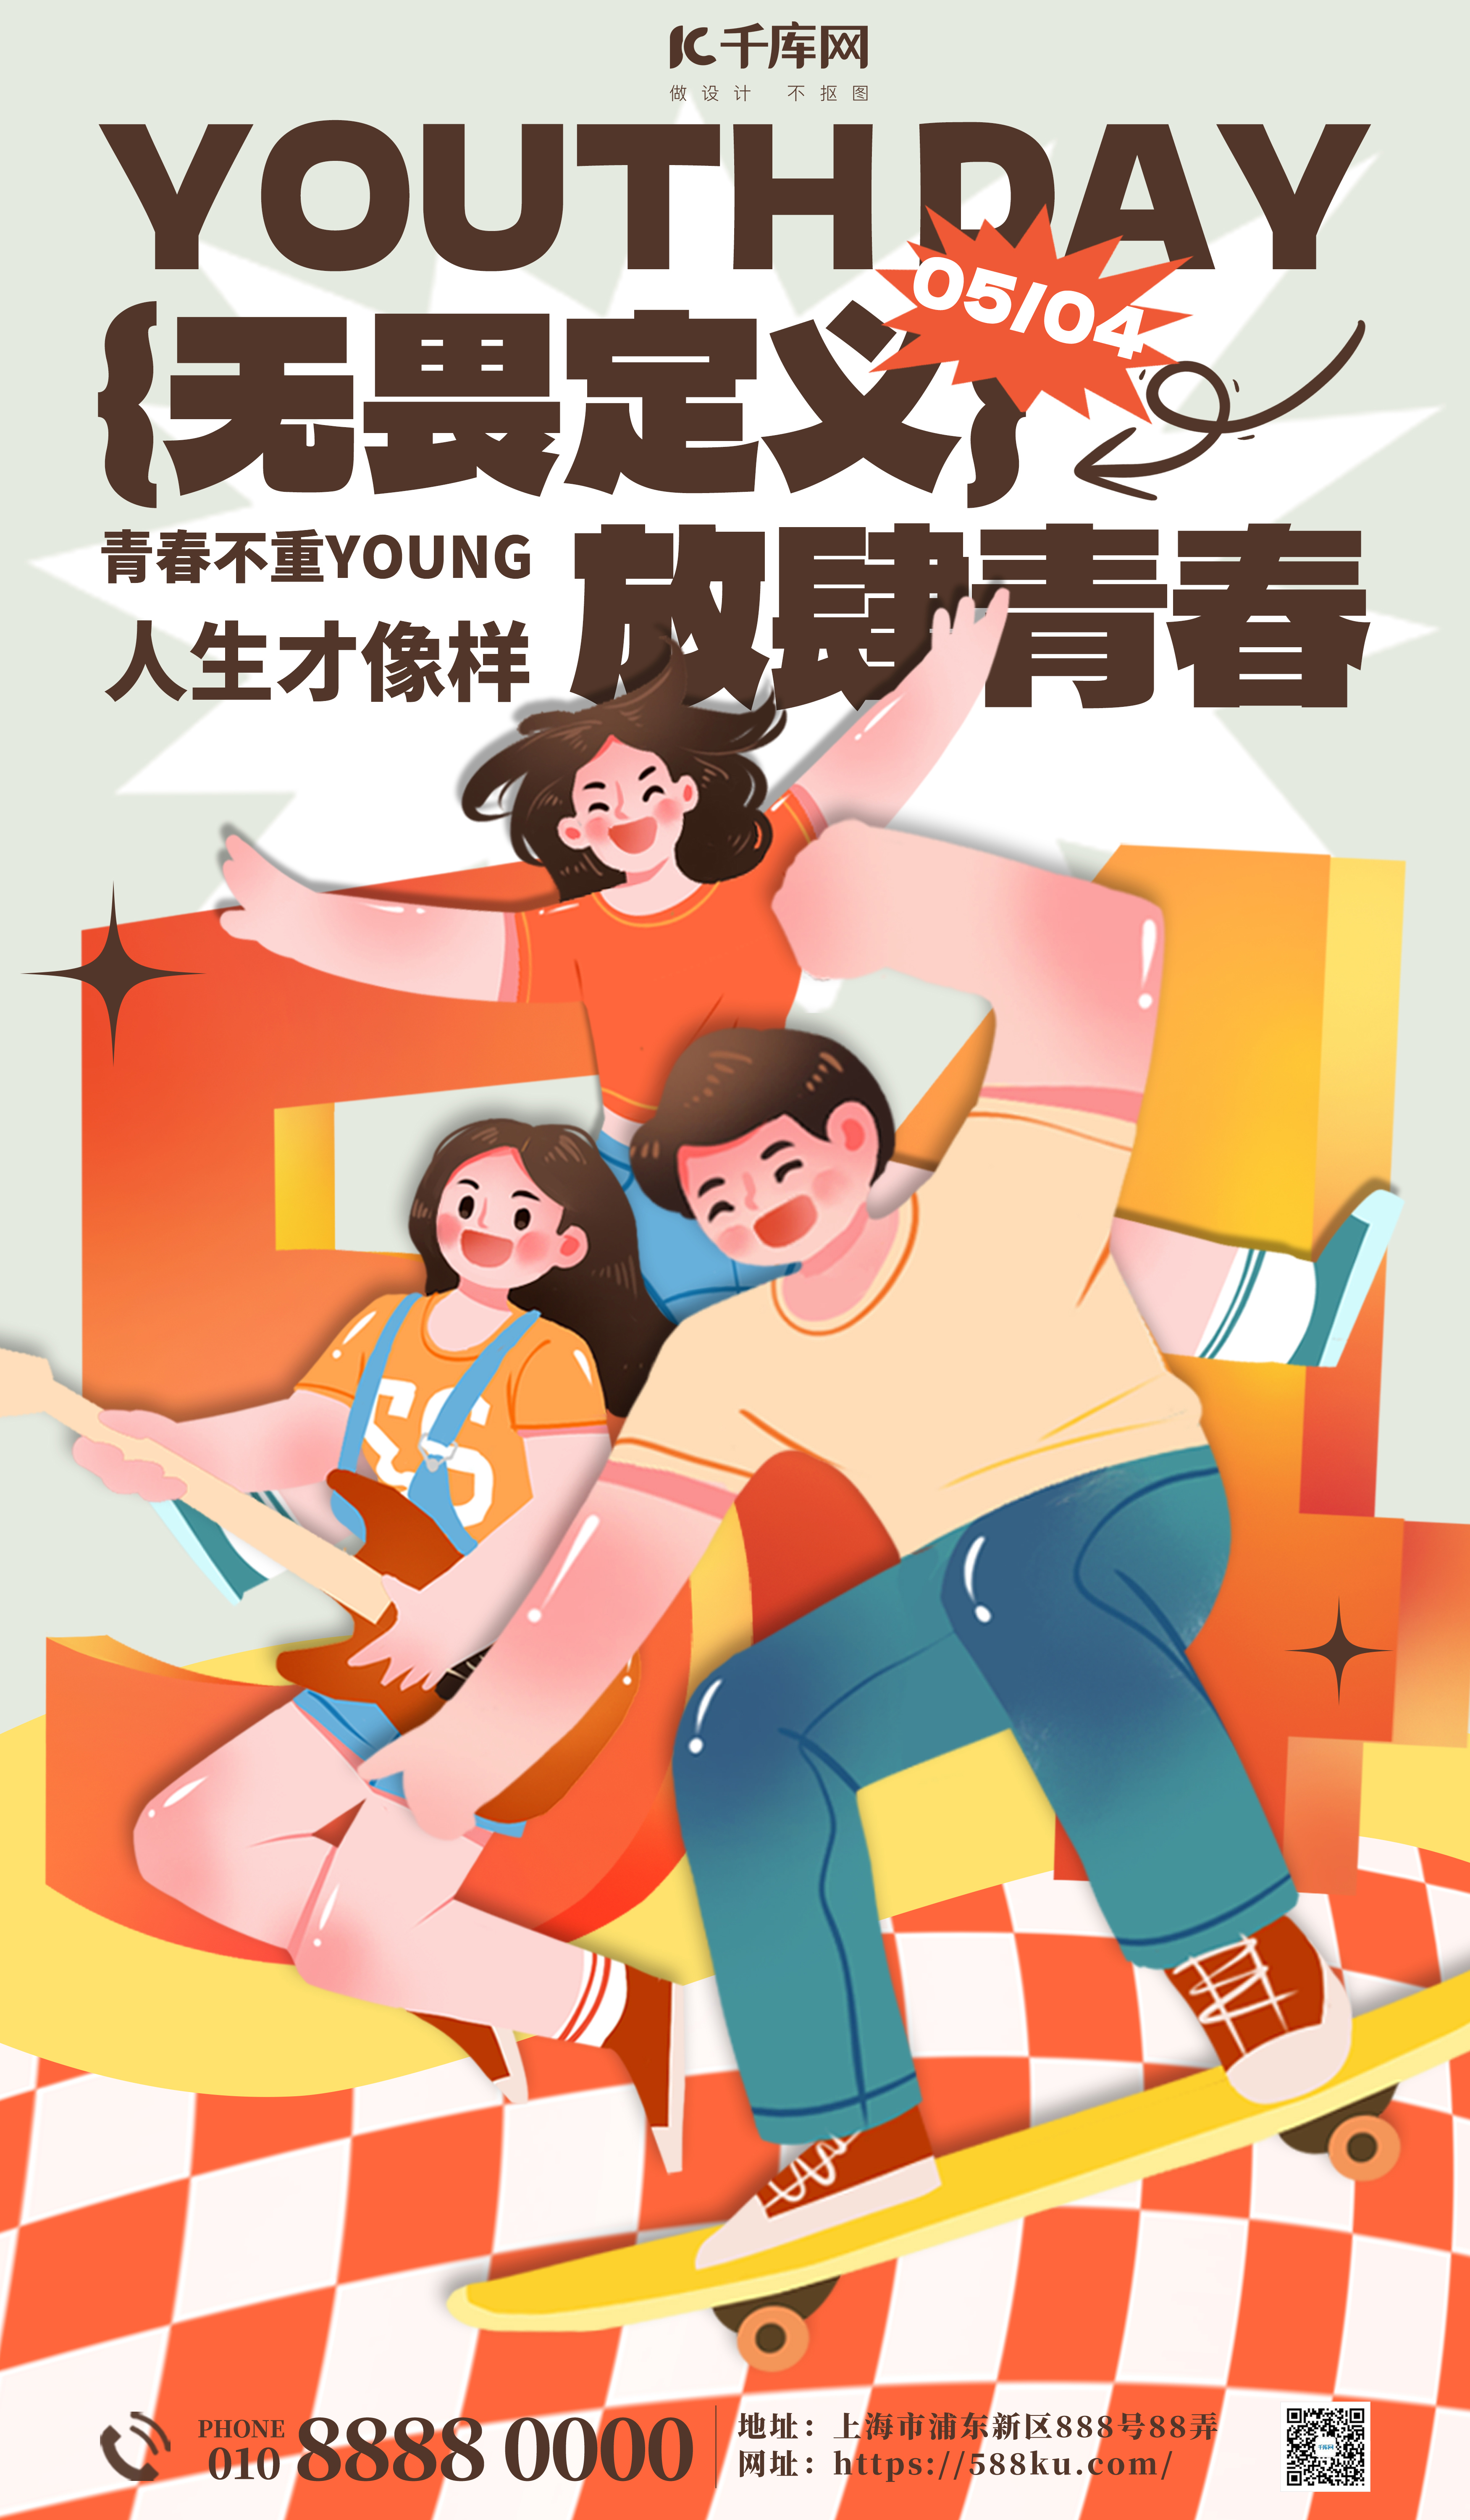 五四青年节节日贺卡黄色简约大气宣传海报图片